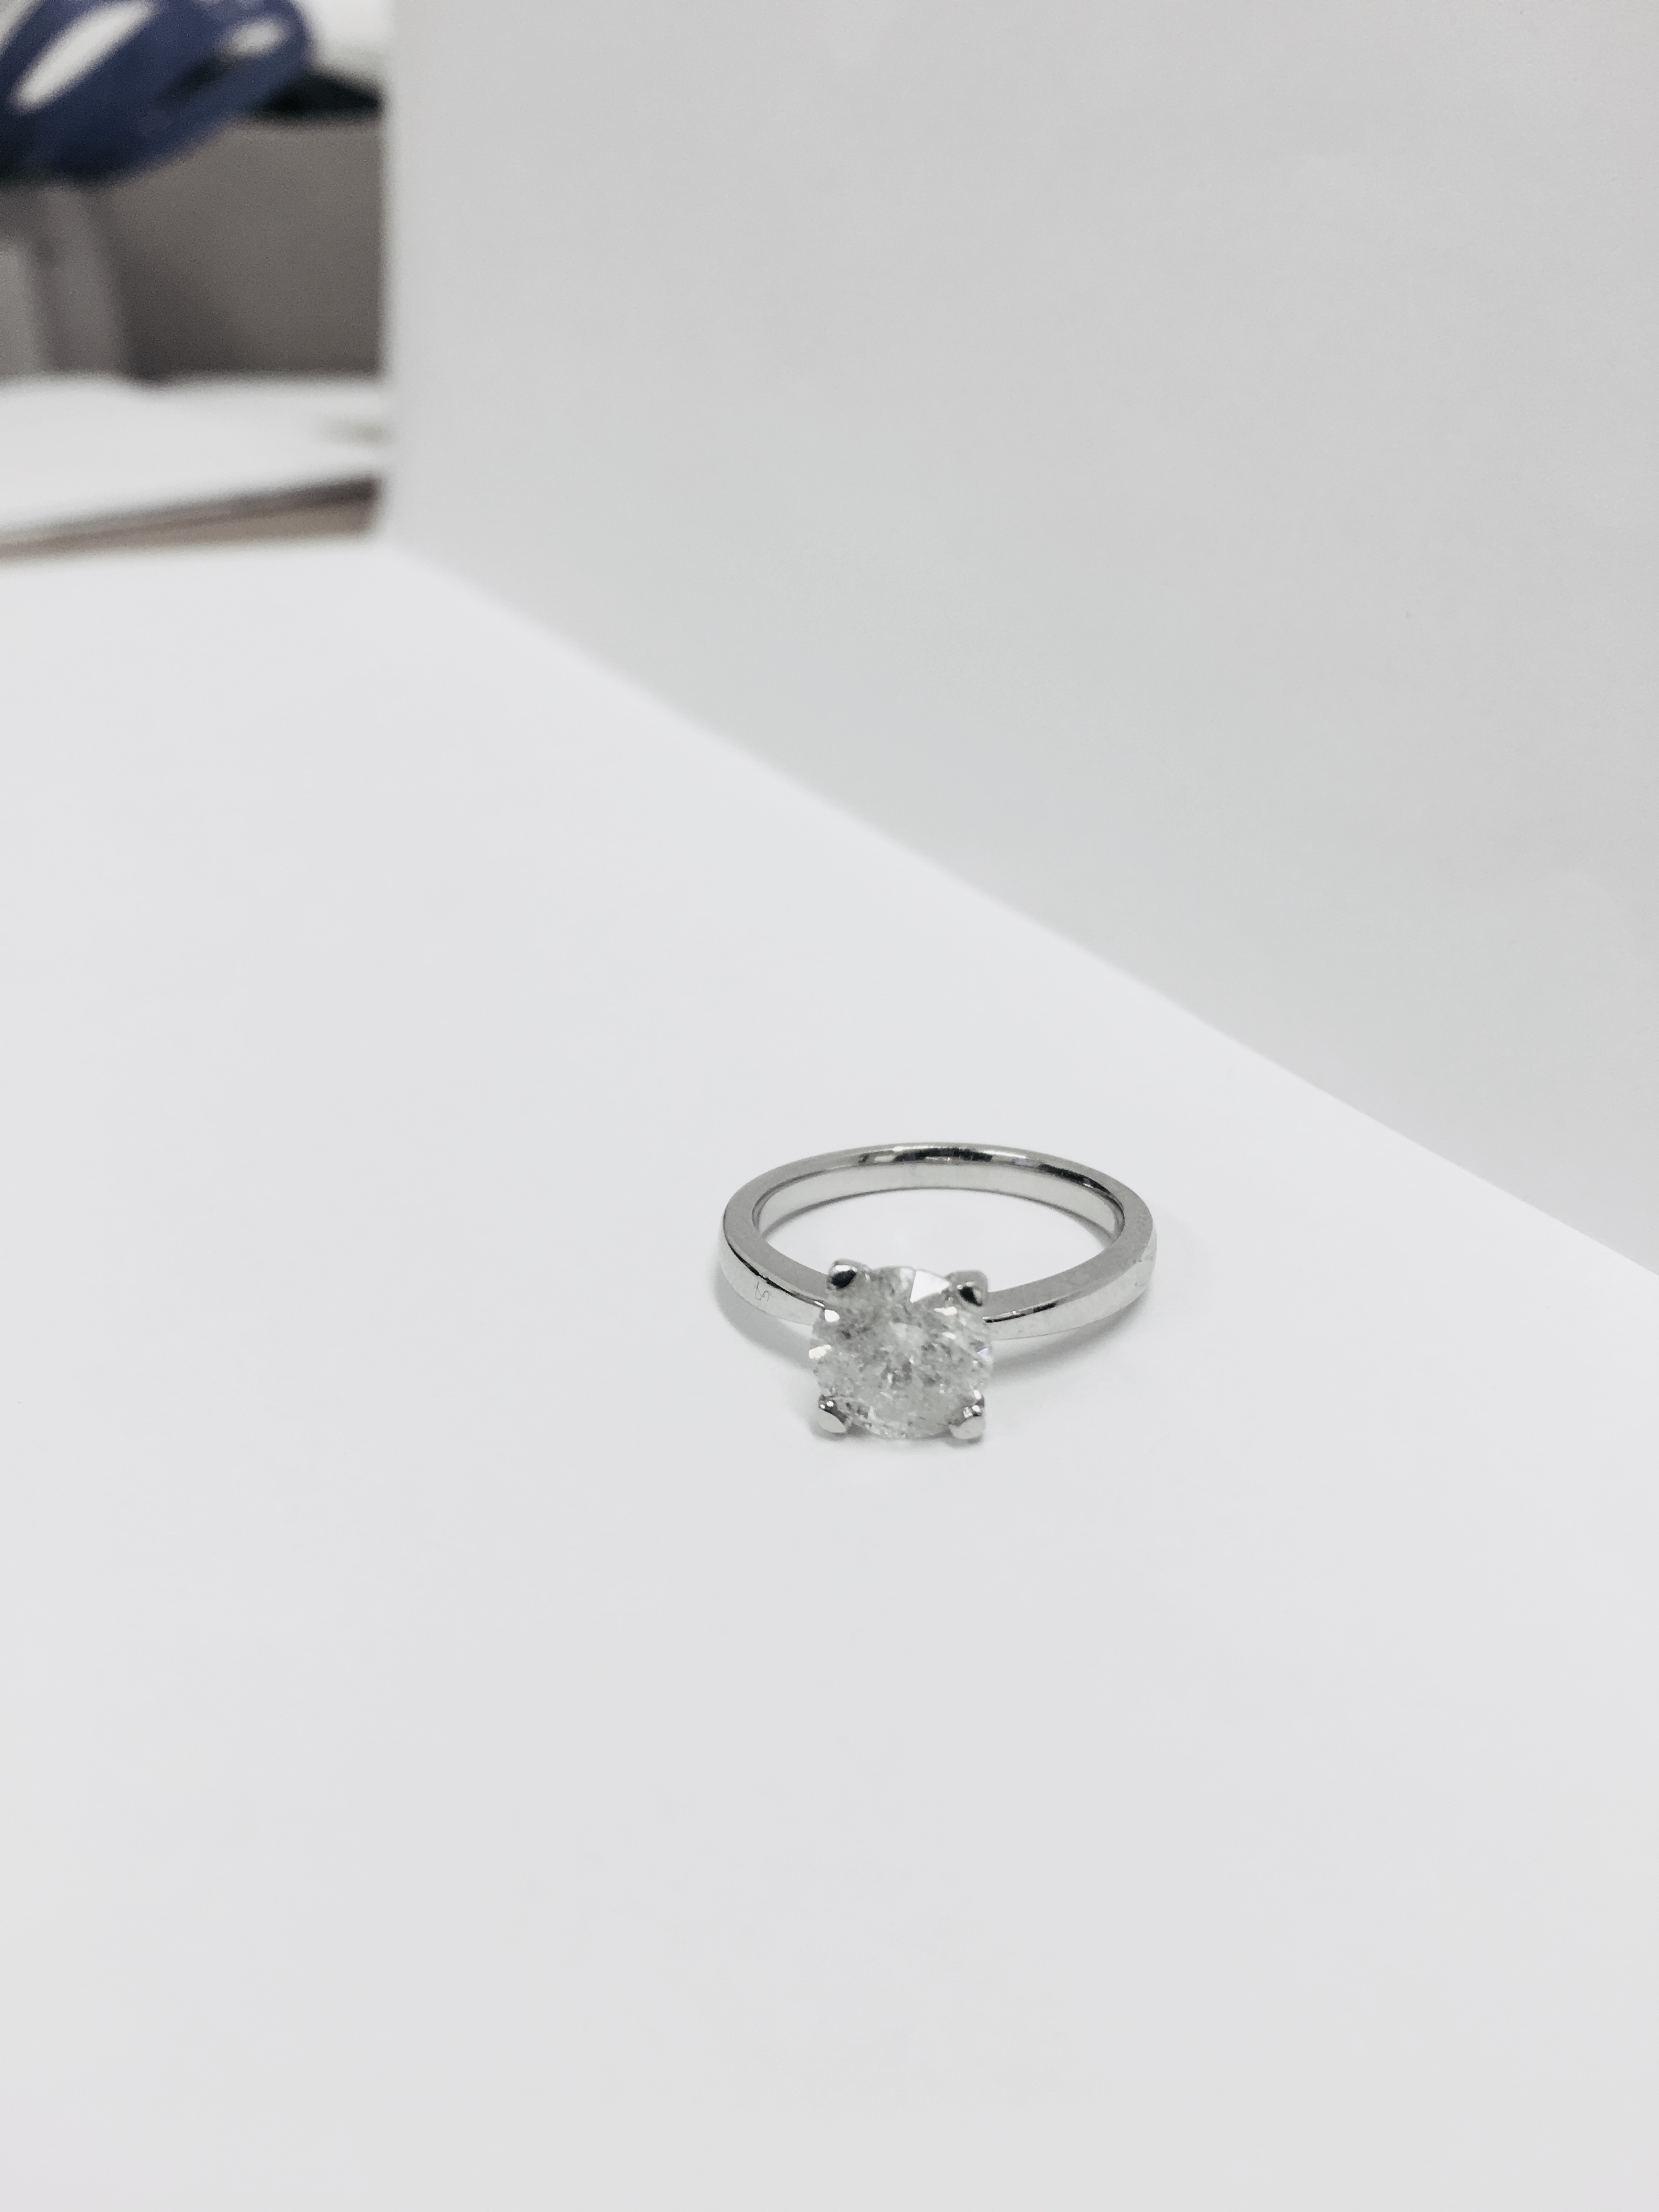 2.08ct diamond solitaire ring set in platinum - Image 11 of 48